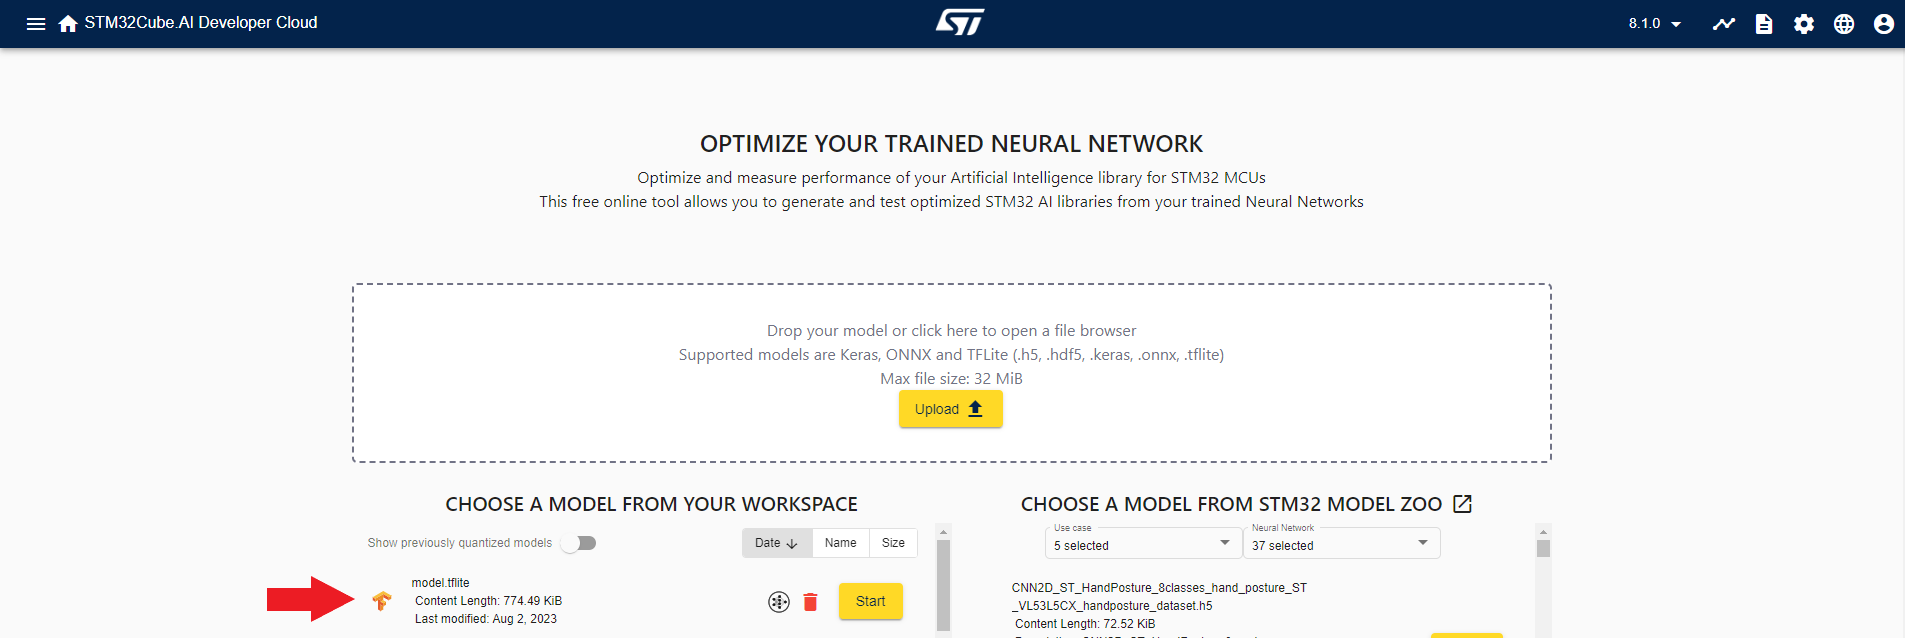 STM32Cube.AI Developer Cloud model in workspace